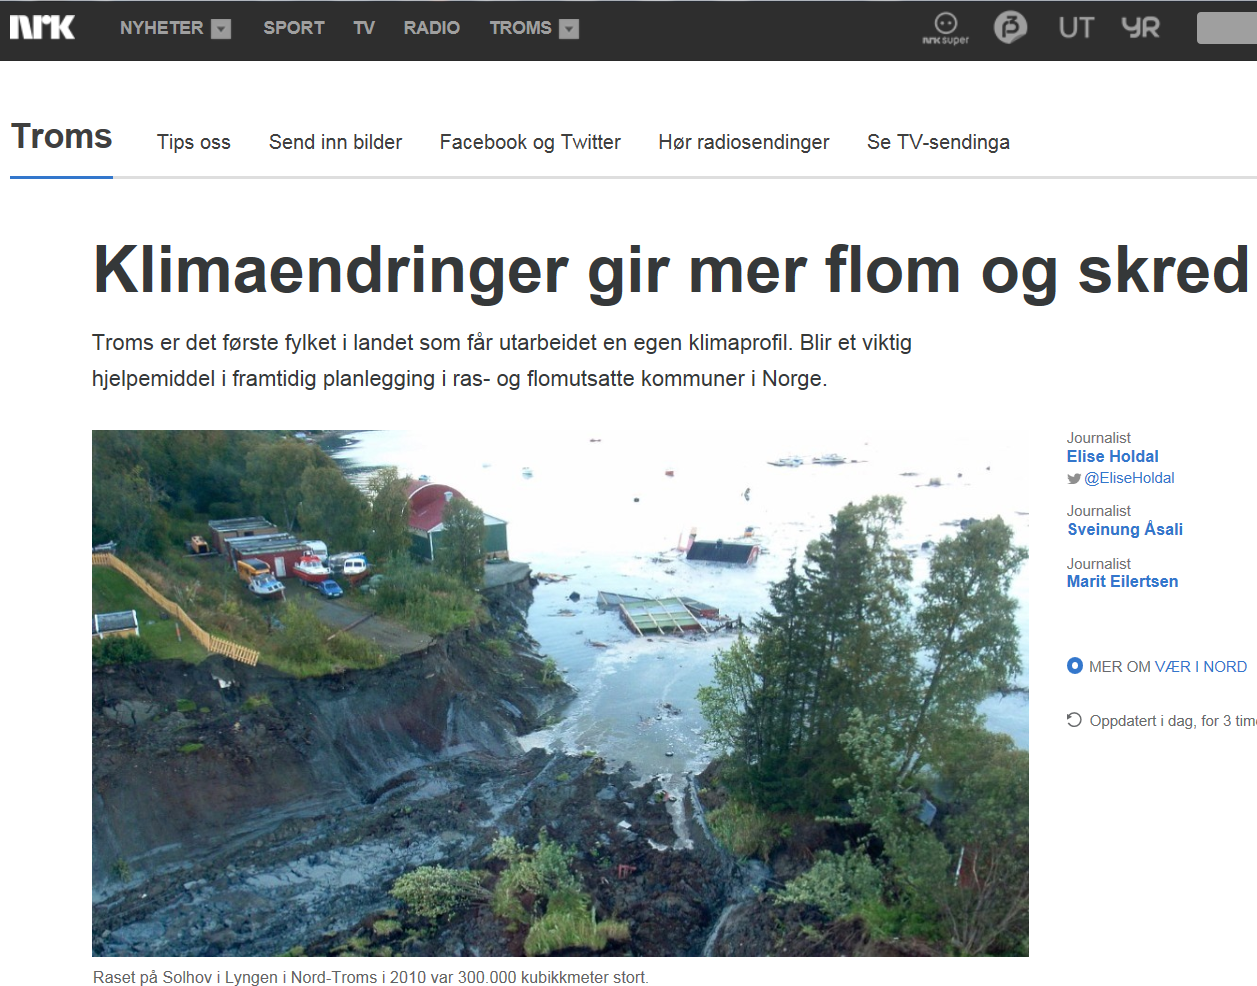 Lokal tilpasning - Klimaprofil Troms, nrk.no 20.05.2015: 22.09.